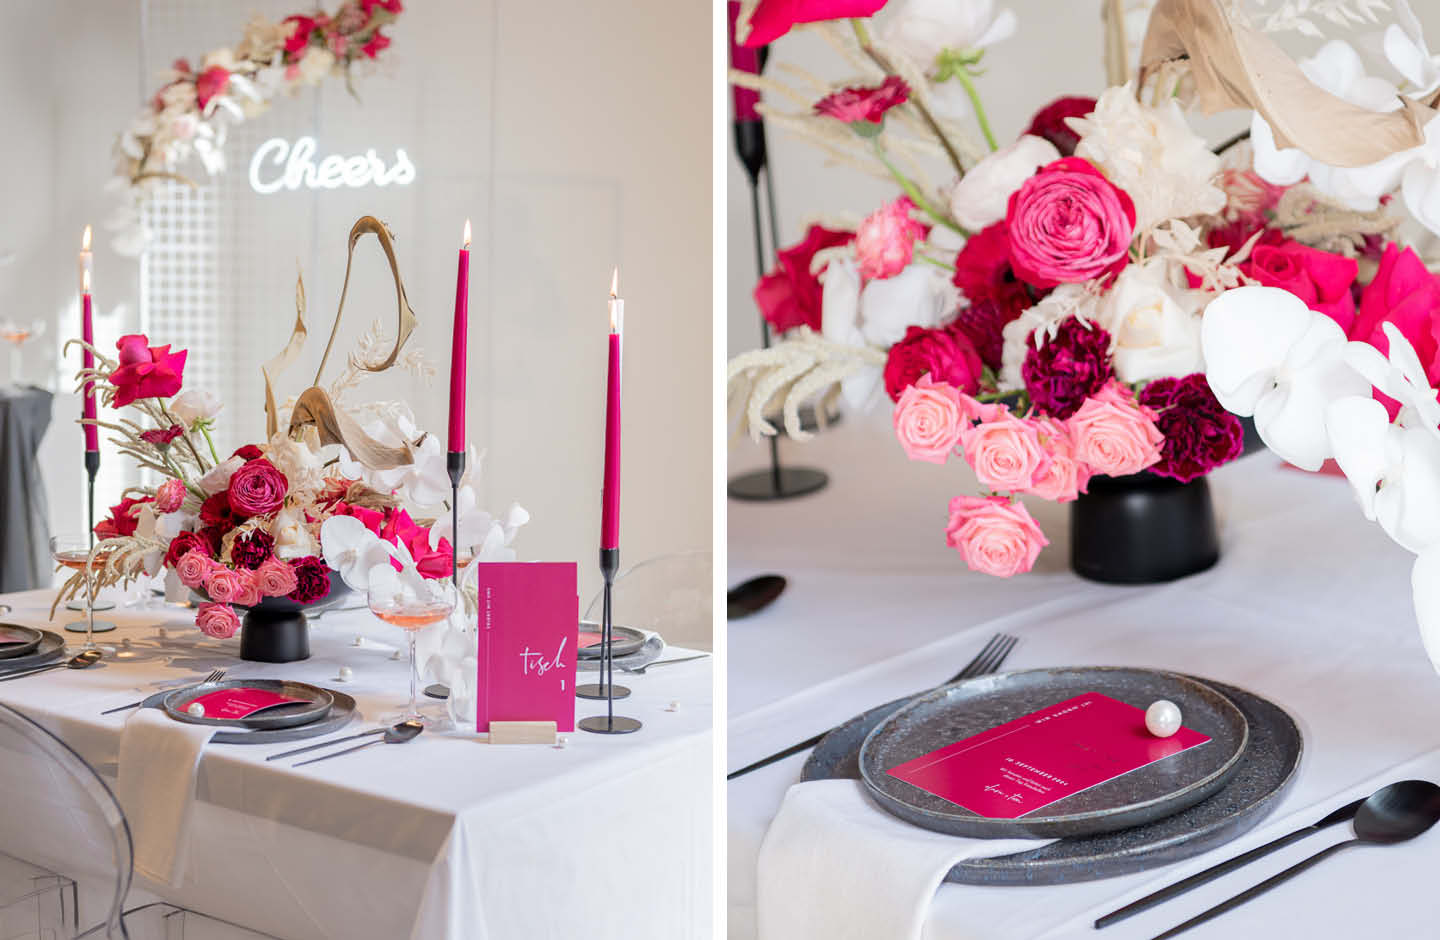 Der Hochzeitstisch ist mit magentafarbenen Elementen dekoriert.